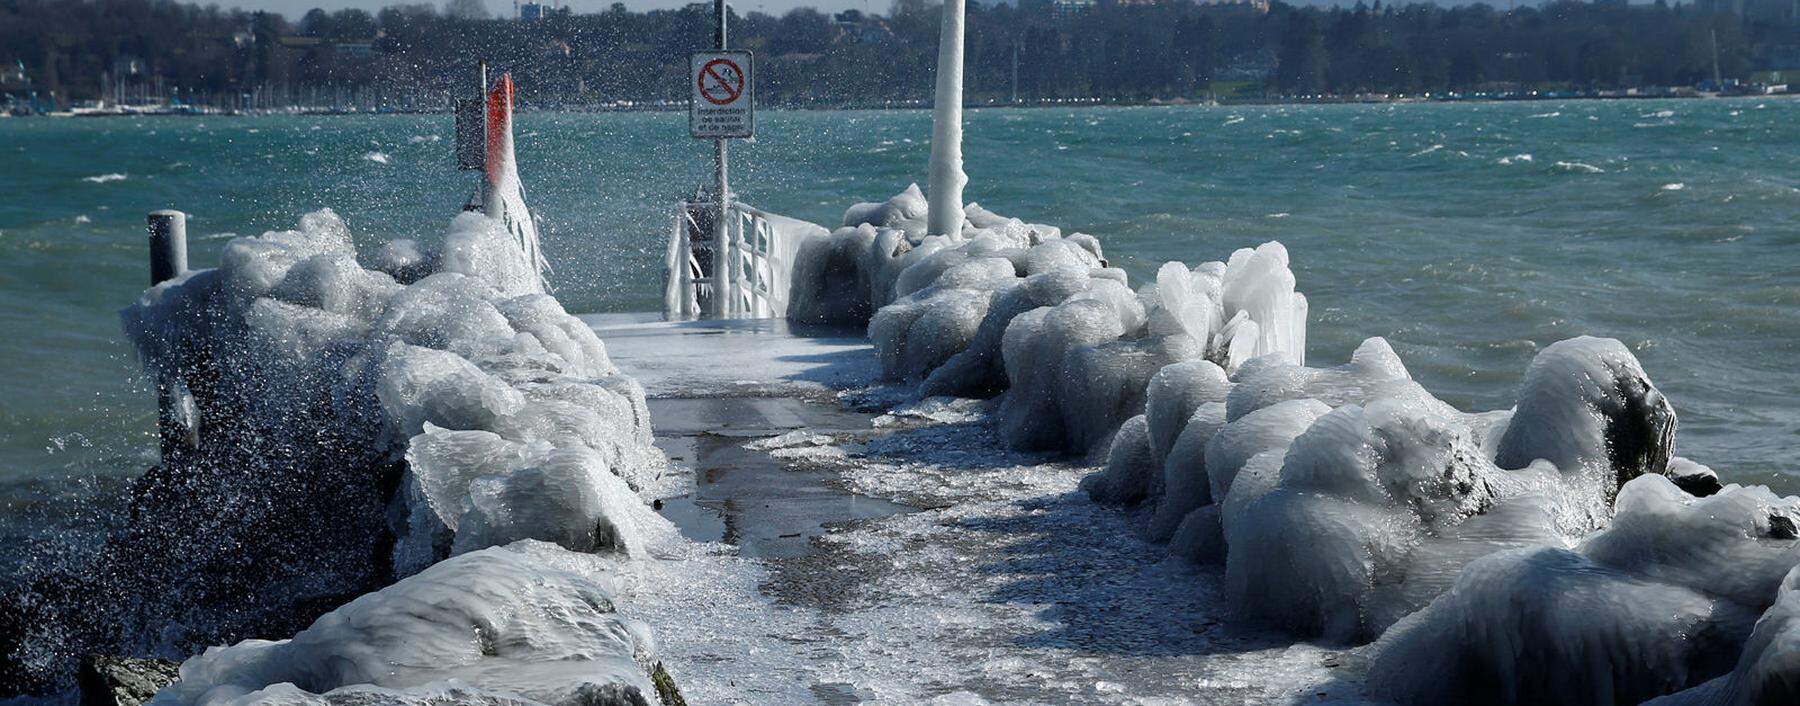 A frozen pier is seen during a windy winter day near Lake Leman in Geneva